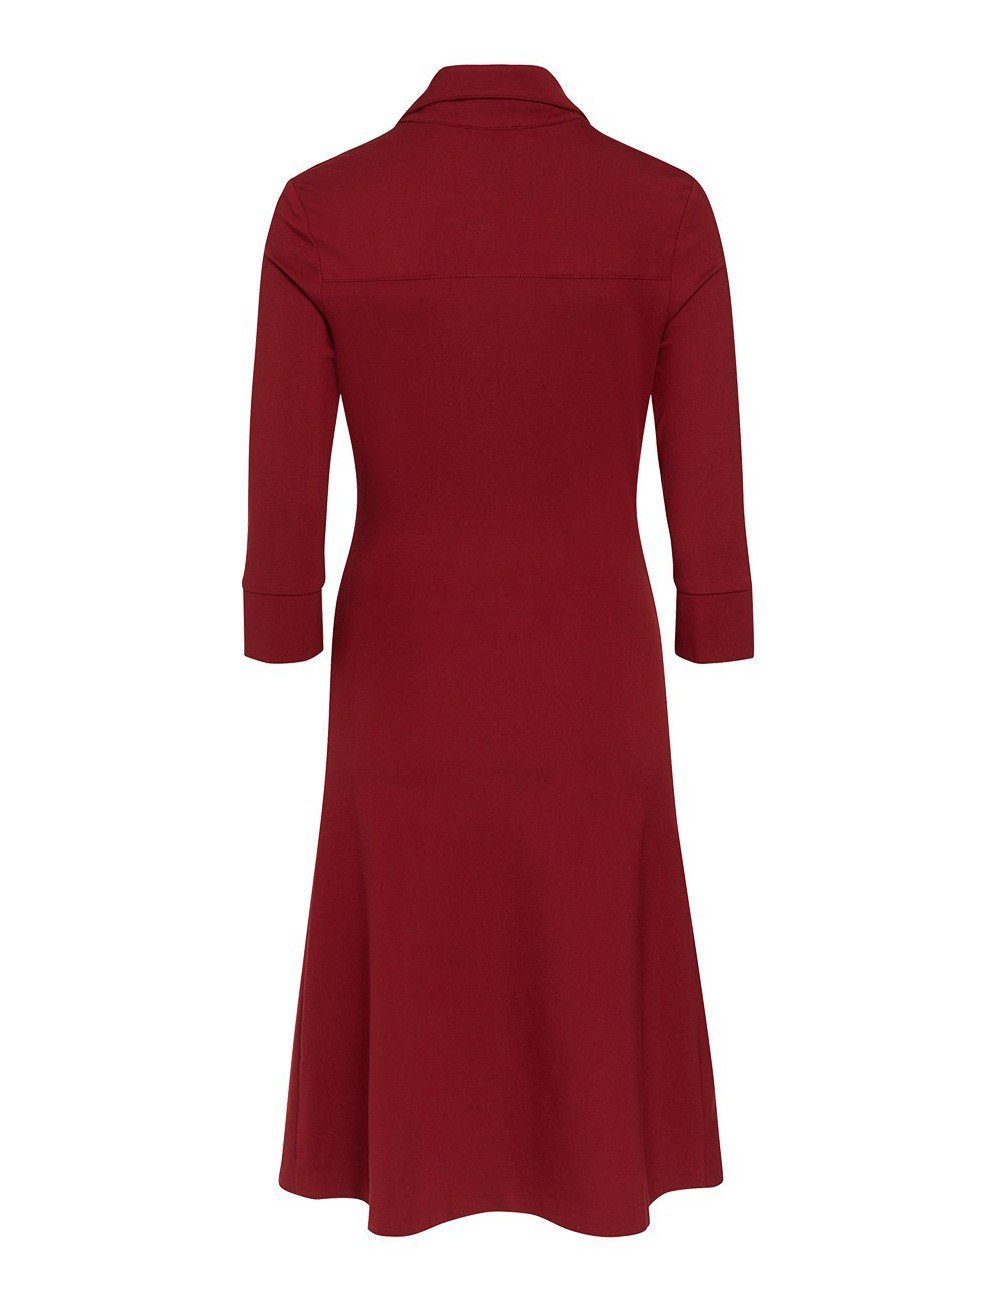 Hemdblusenkleid Stretch-Kleid von Millet burgund Boch Brigitte